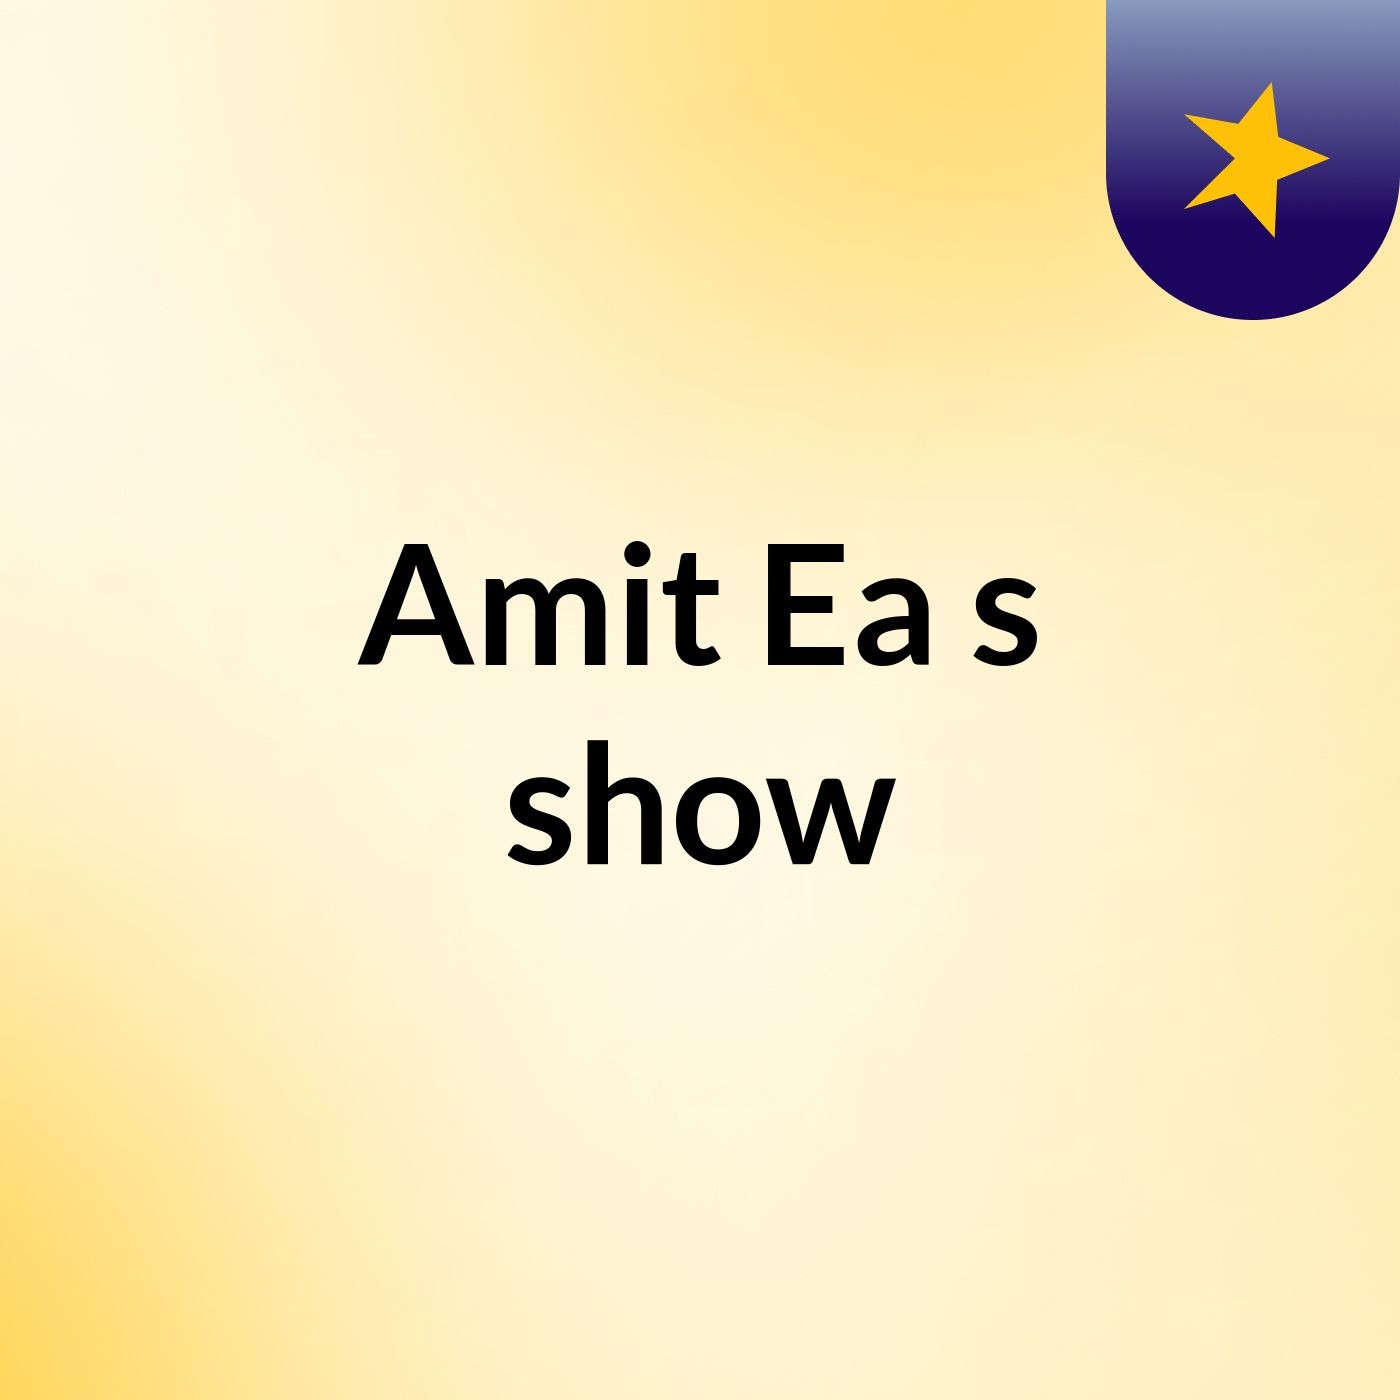 Amit Ea's show